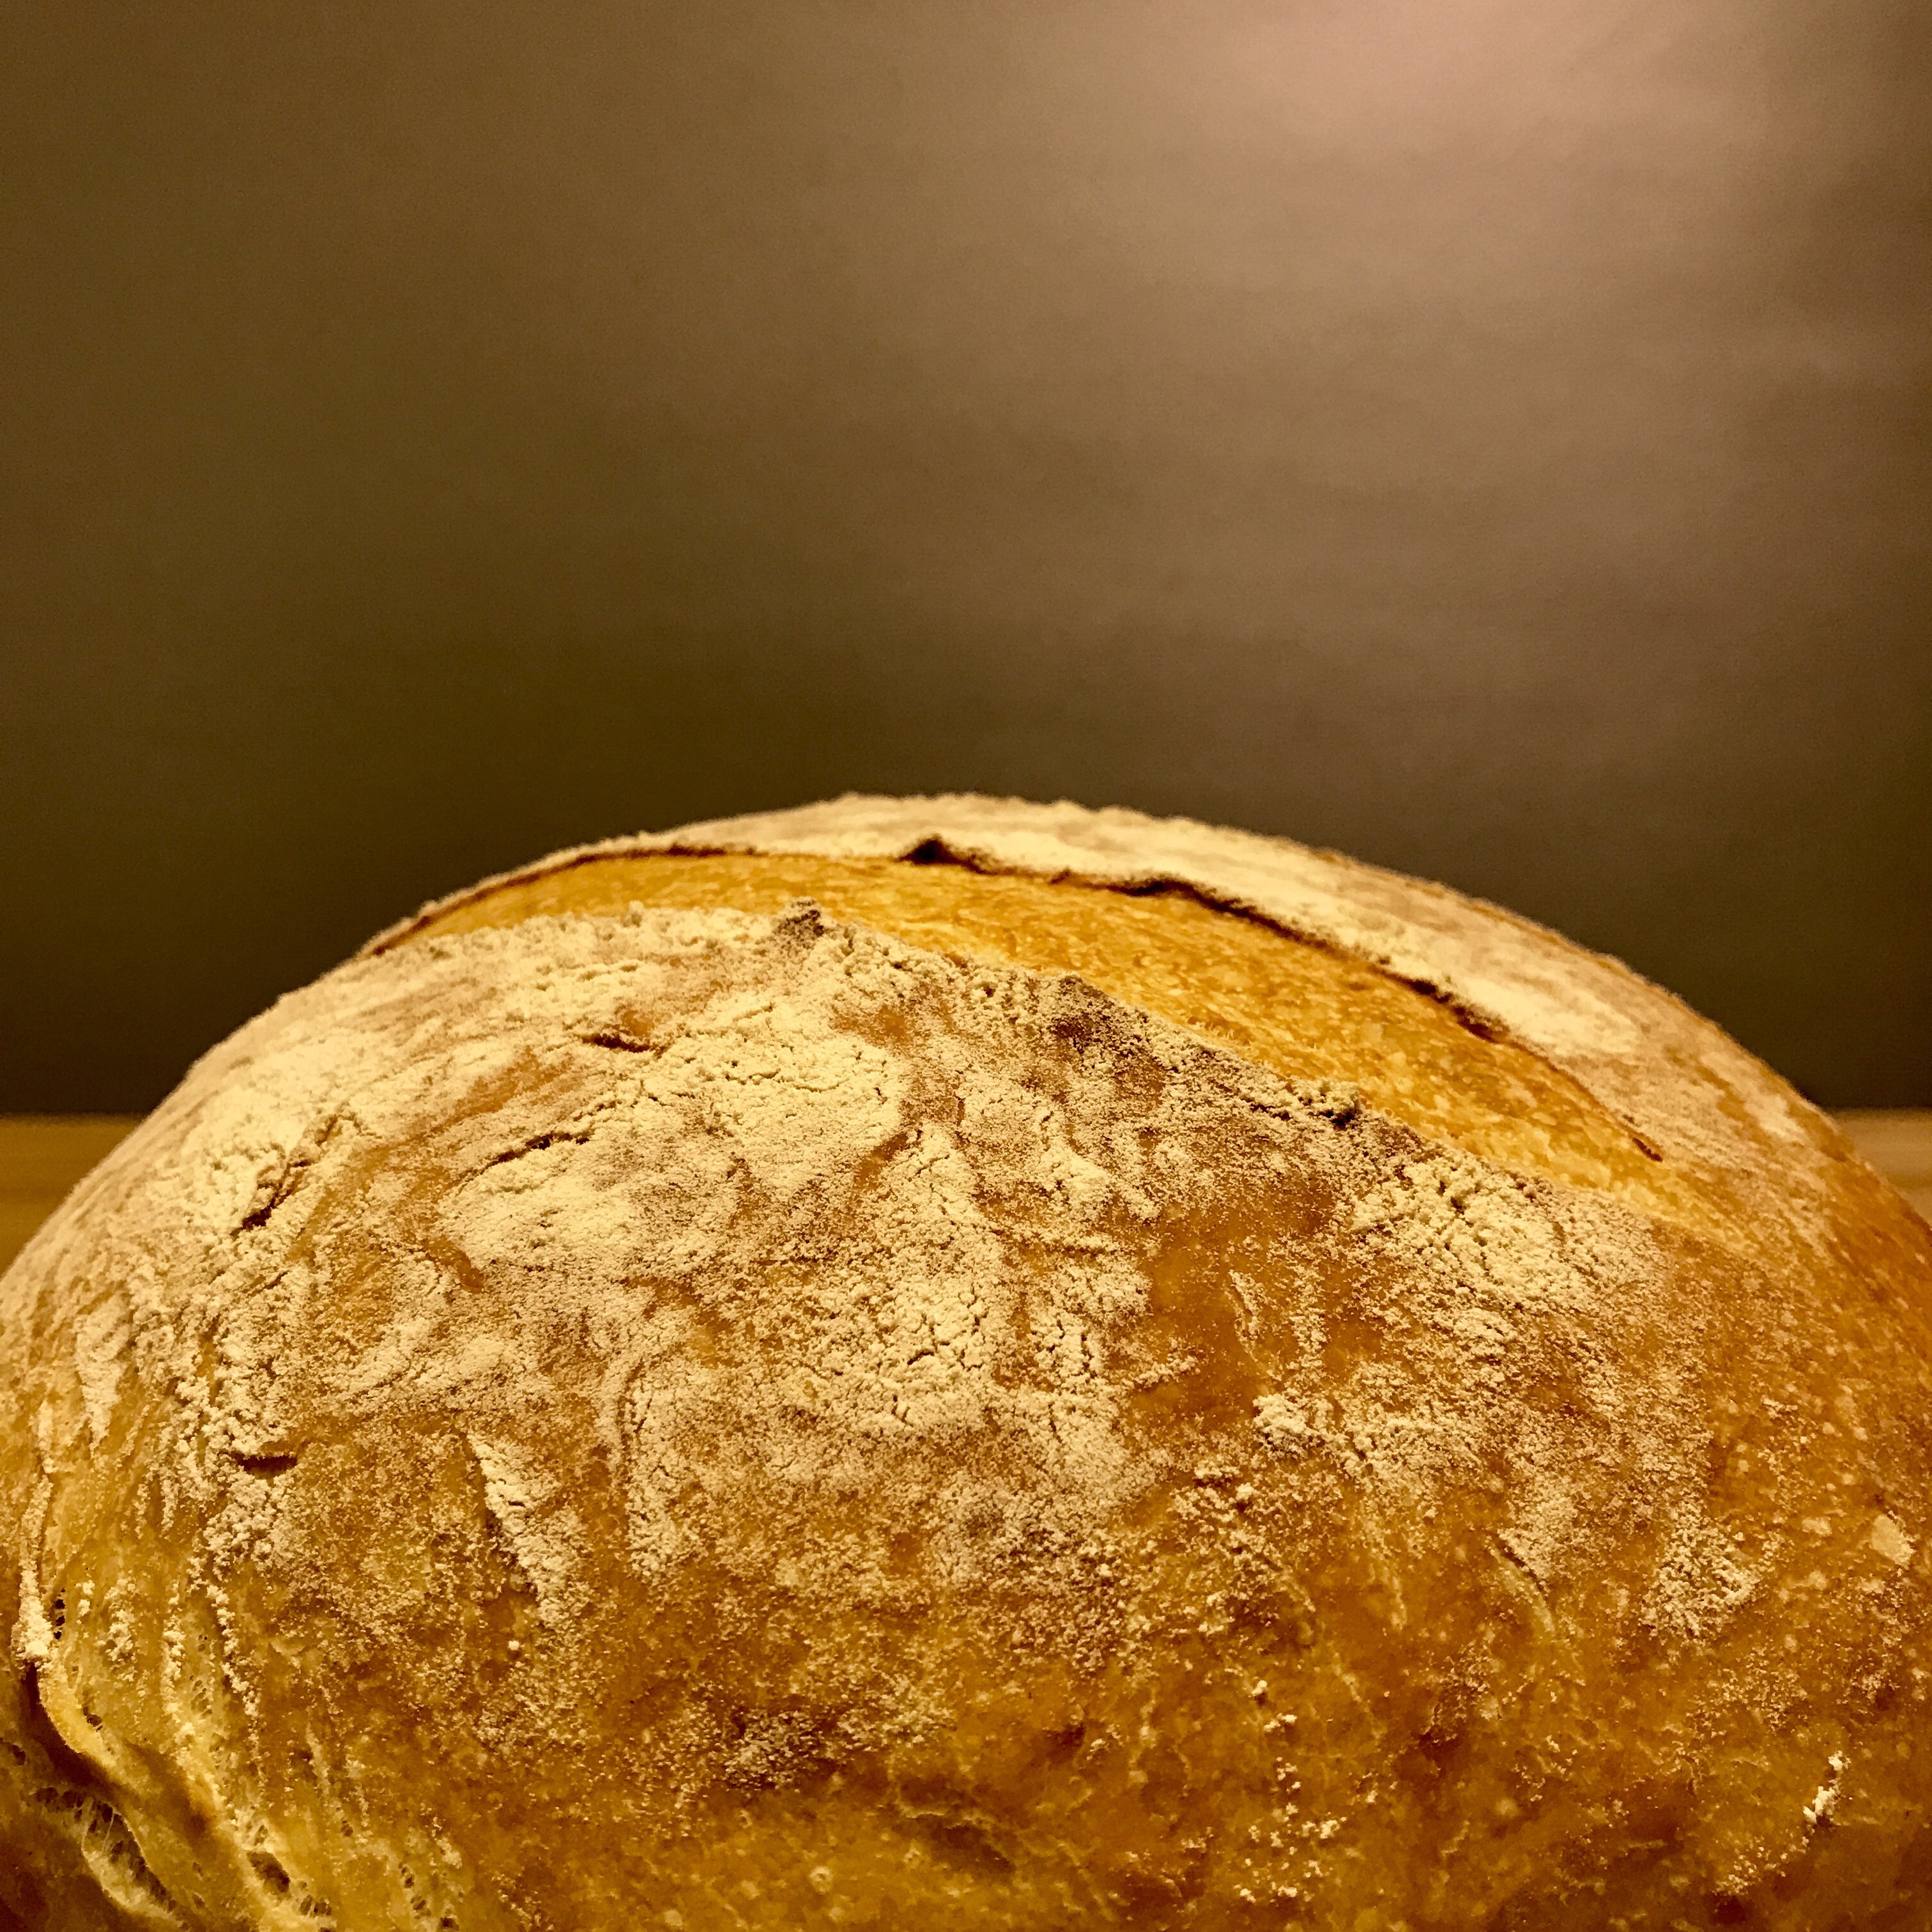 保羅·霍利伍德之傳統經典麵包「布魯姆麵包」